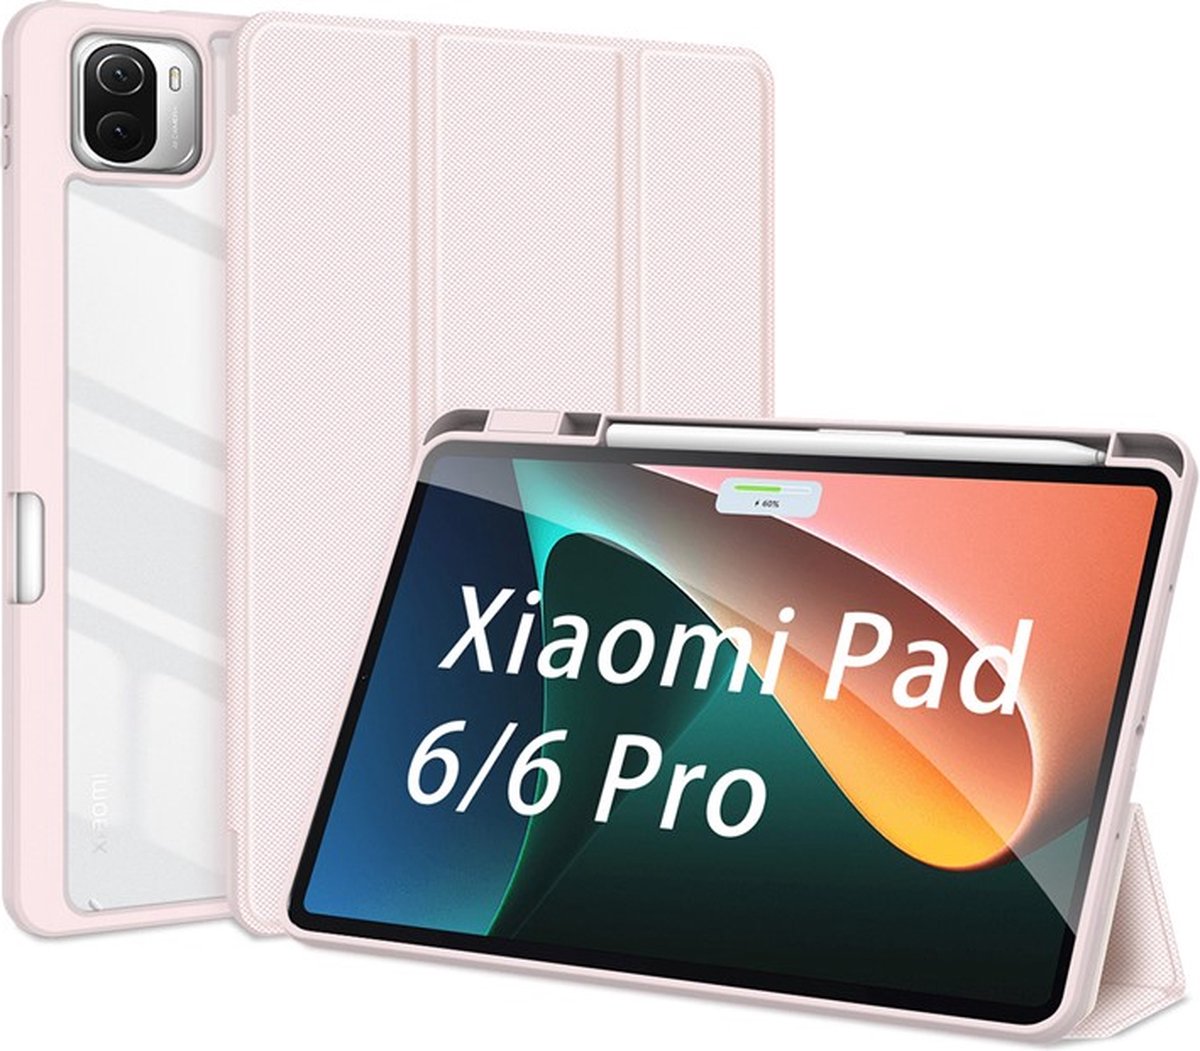 Avec cette offre, la tablette Xiaomi Pad 6 est au prix réduit de